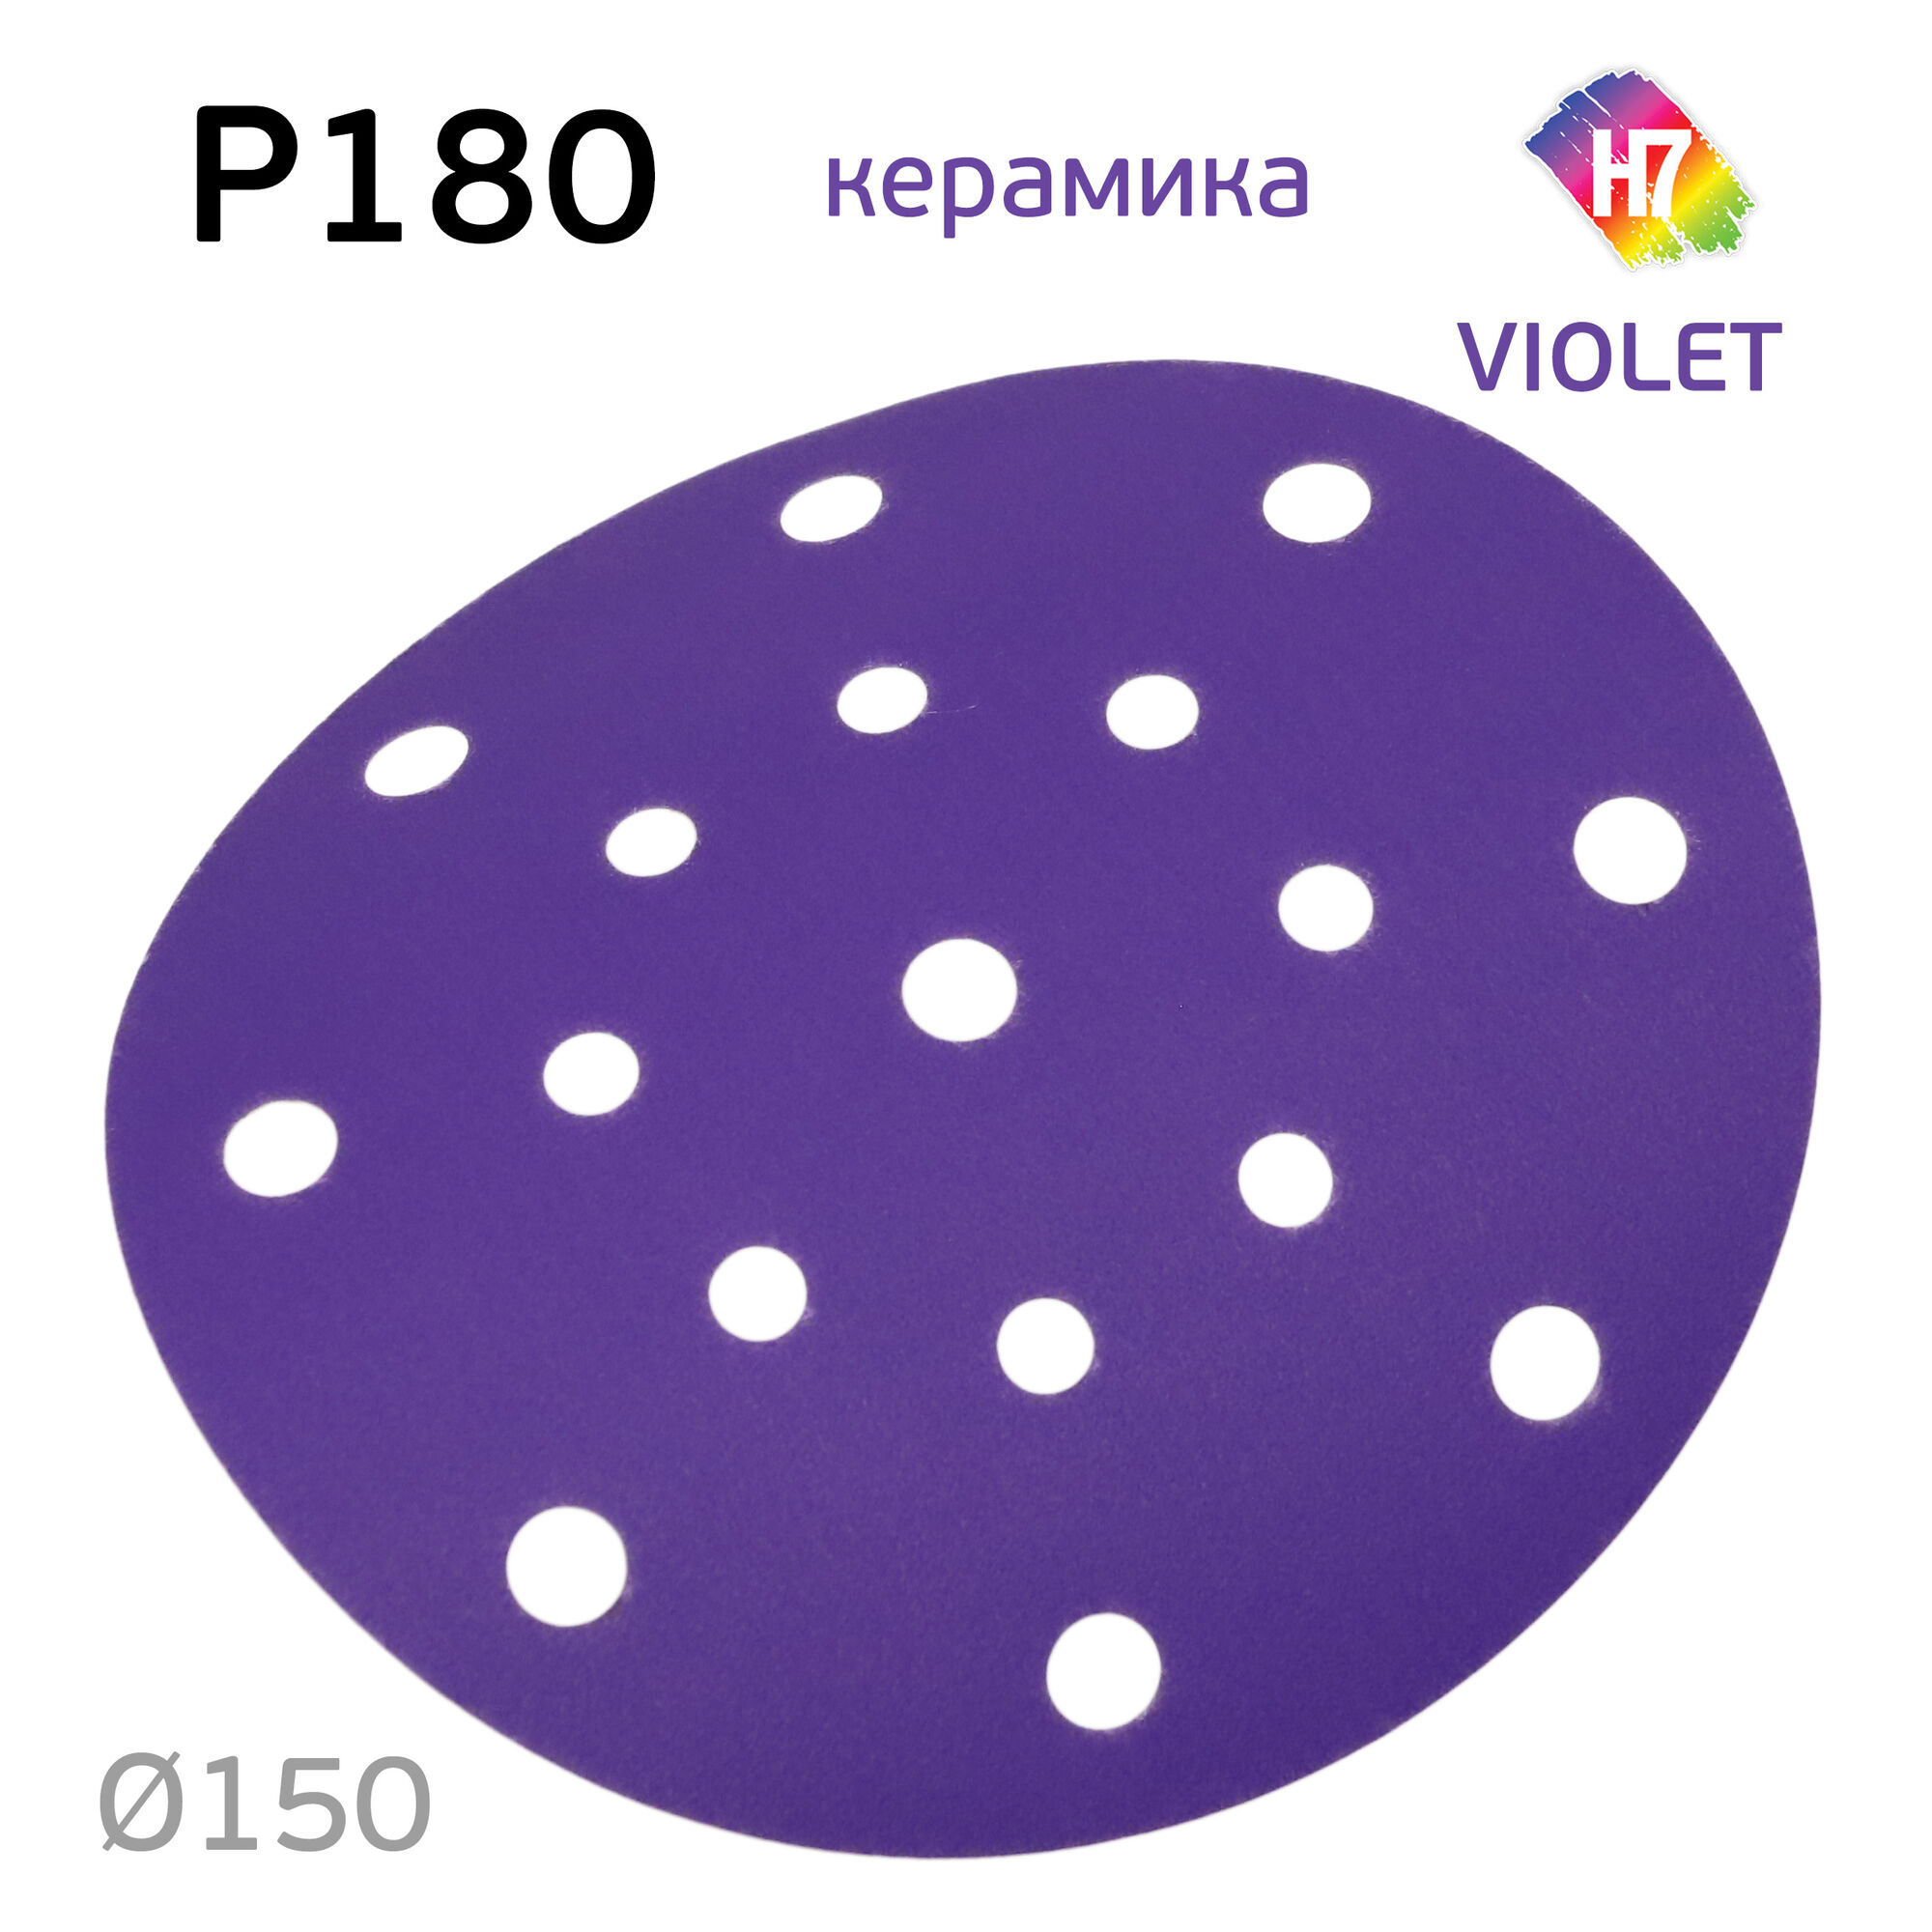 Круг абразивный H7 Violet P180 липучка (17отв.) керамическое зерно